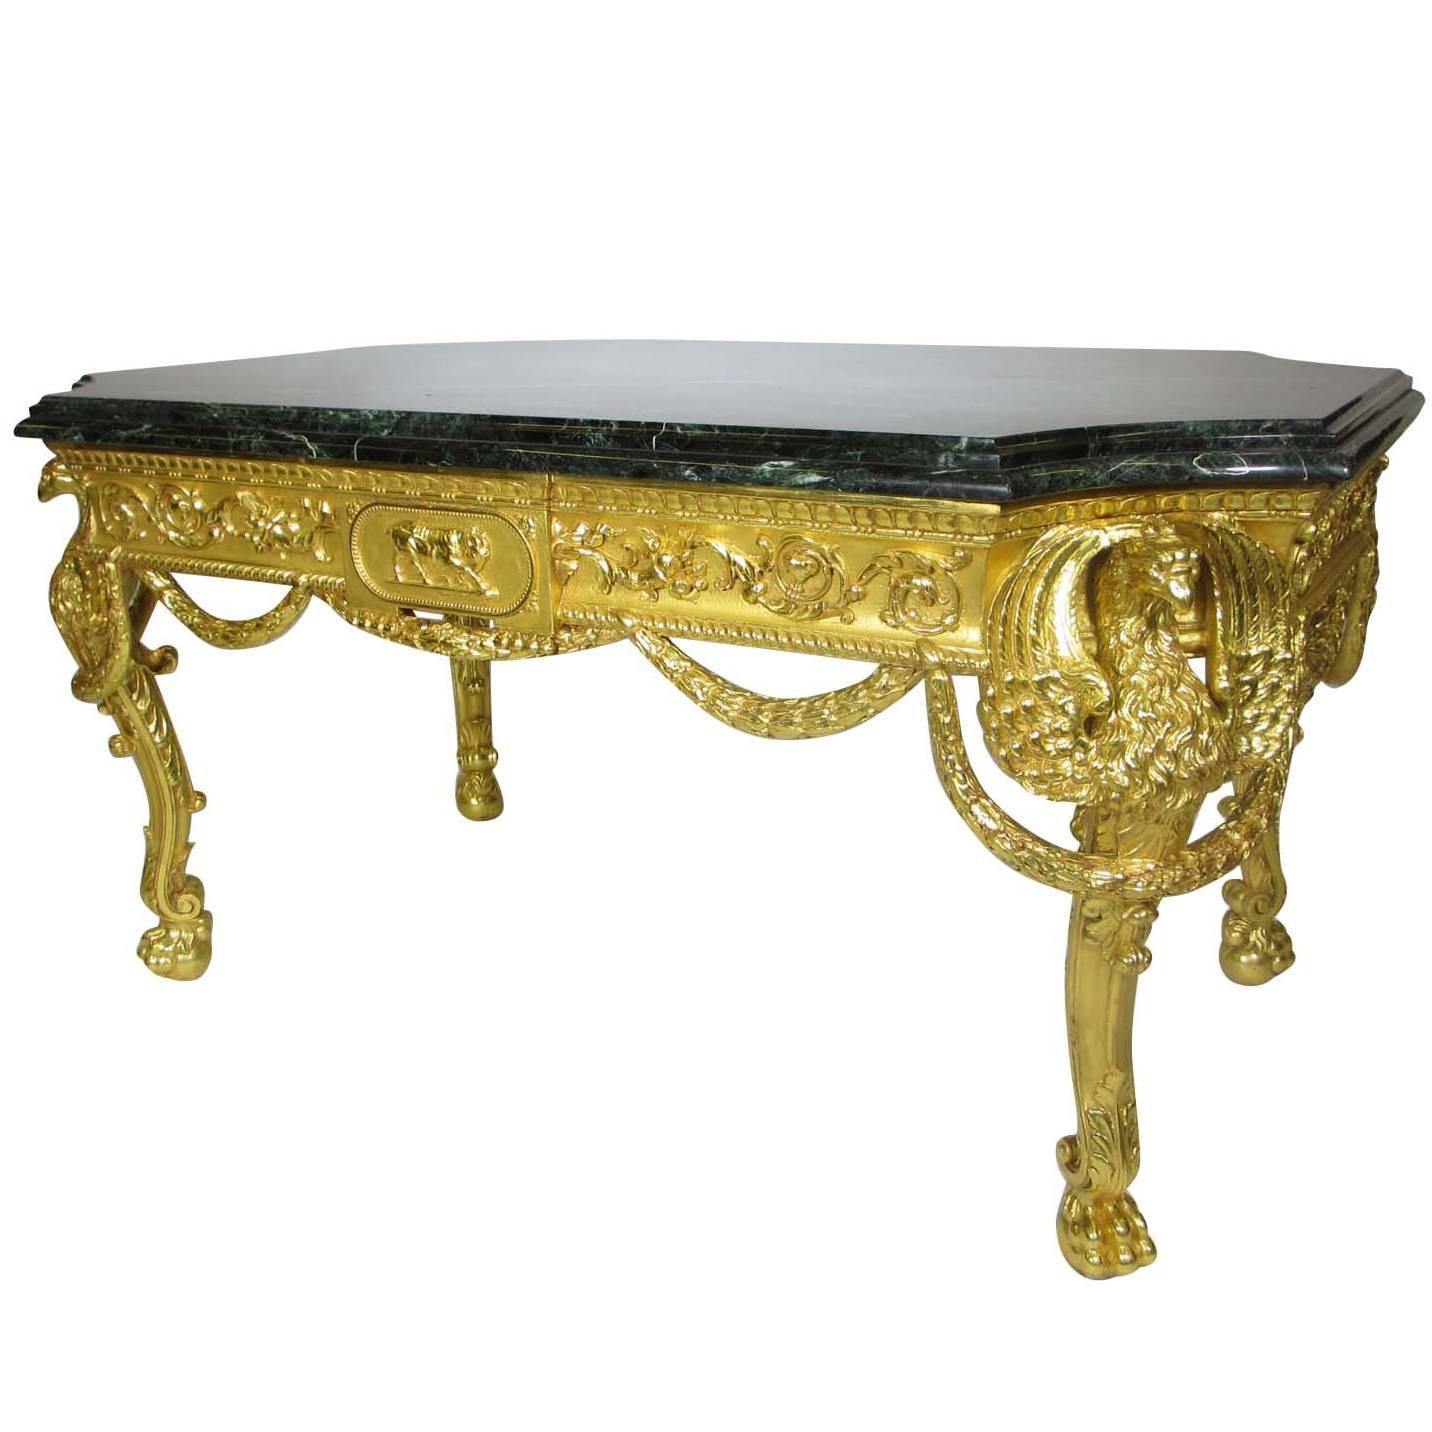 Table centrale de style Empire du 19ème siècle en bois doré sculpté avec aigles